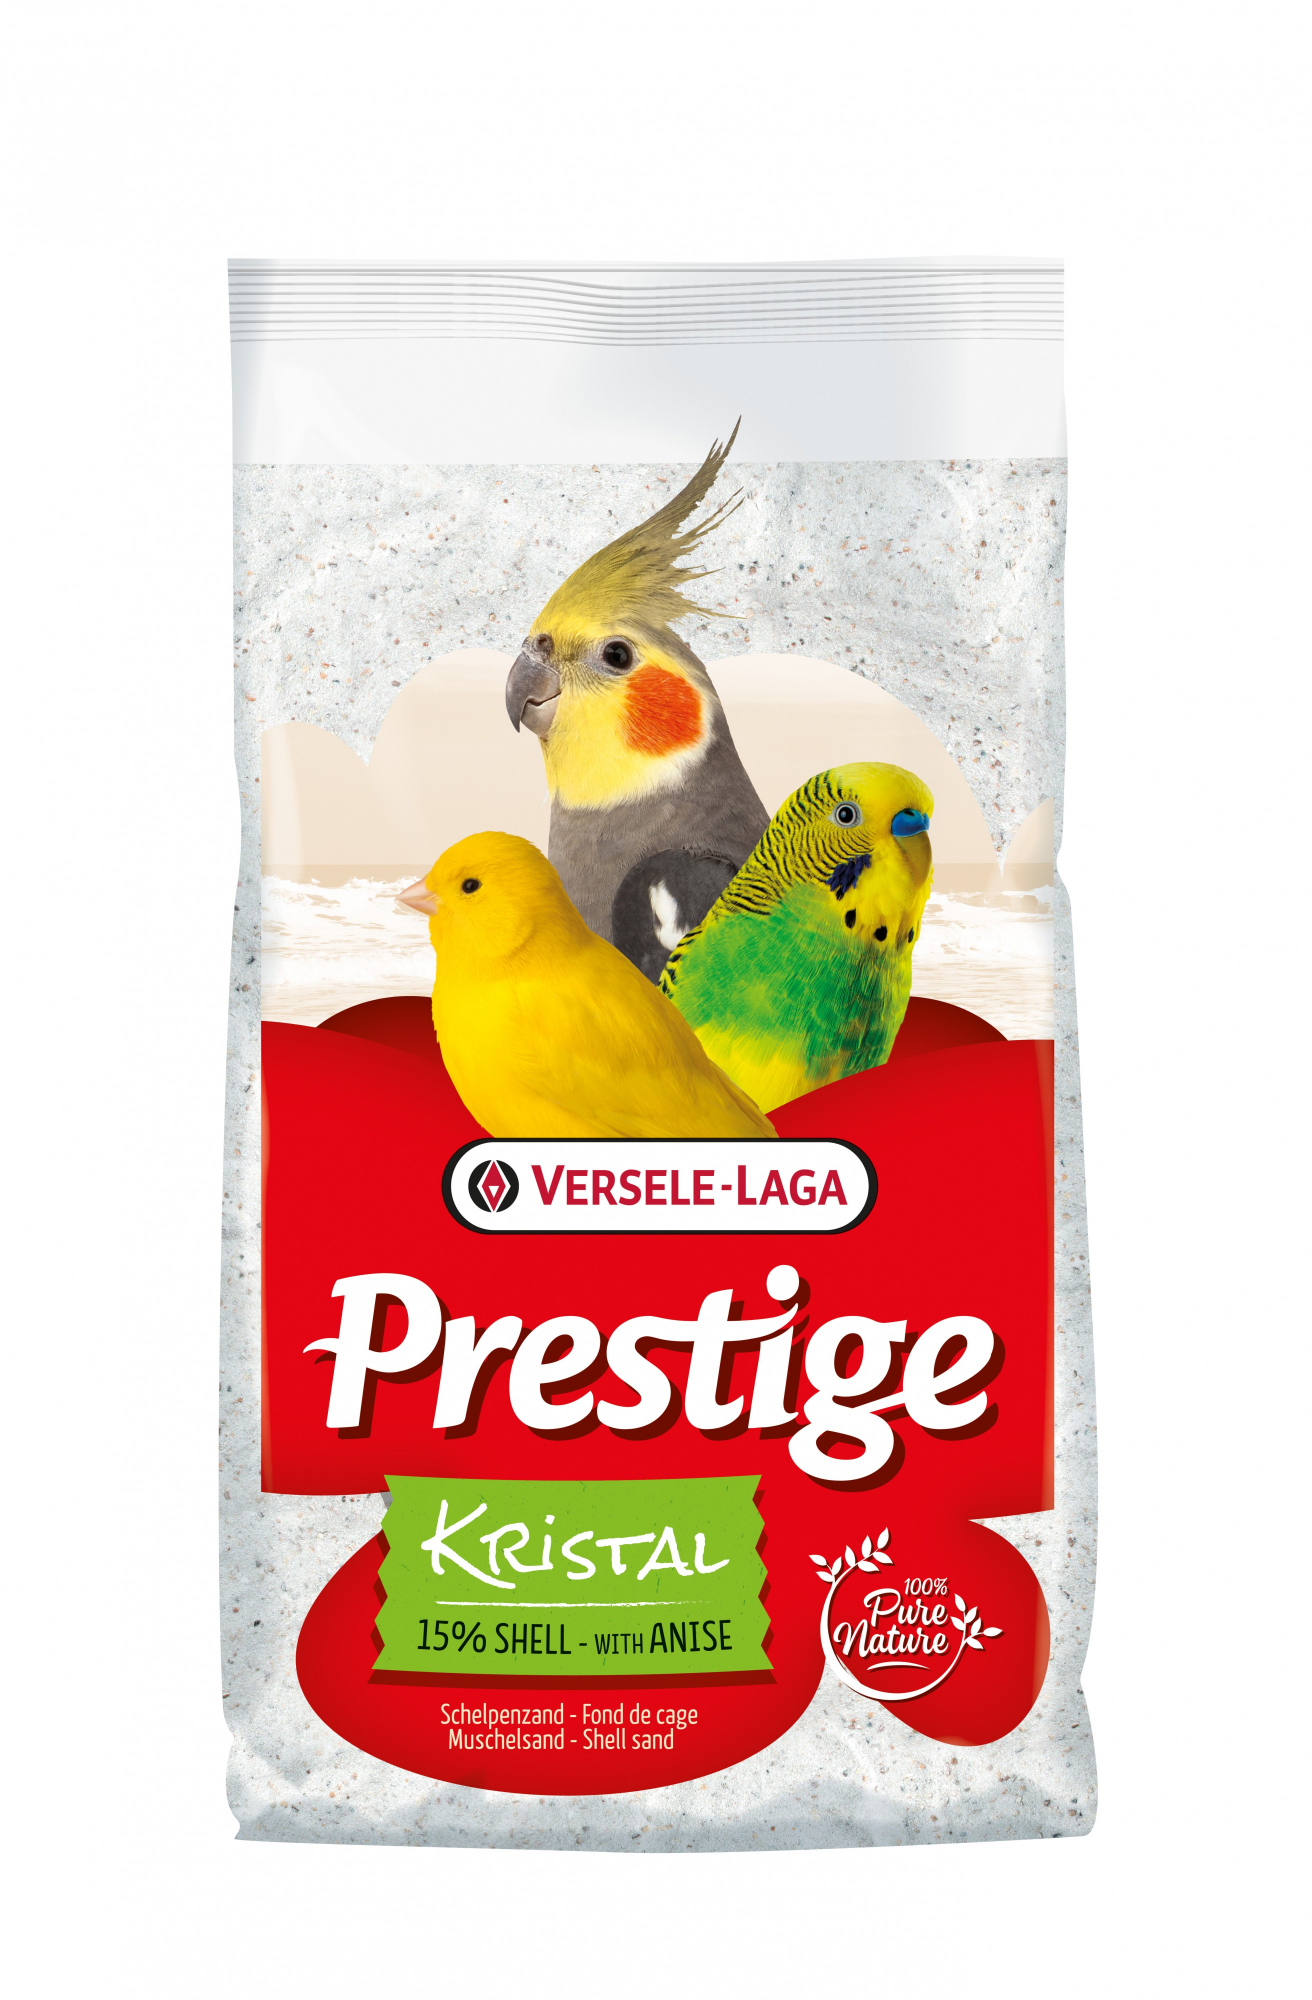 Prestige Kristal - Arena blanca para bandeja con 15% de cáscaras